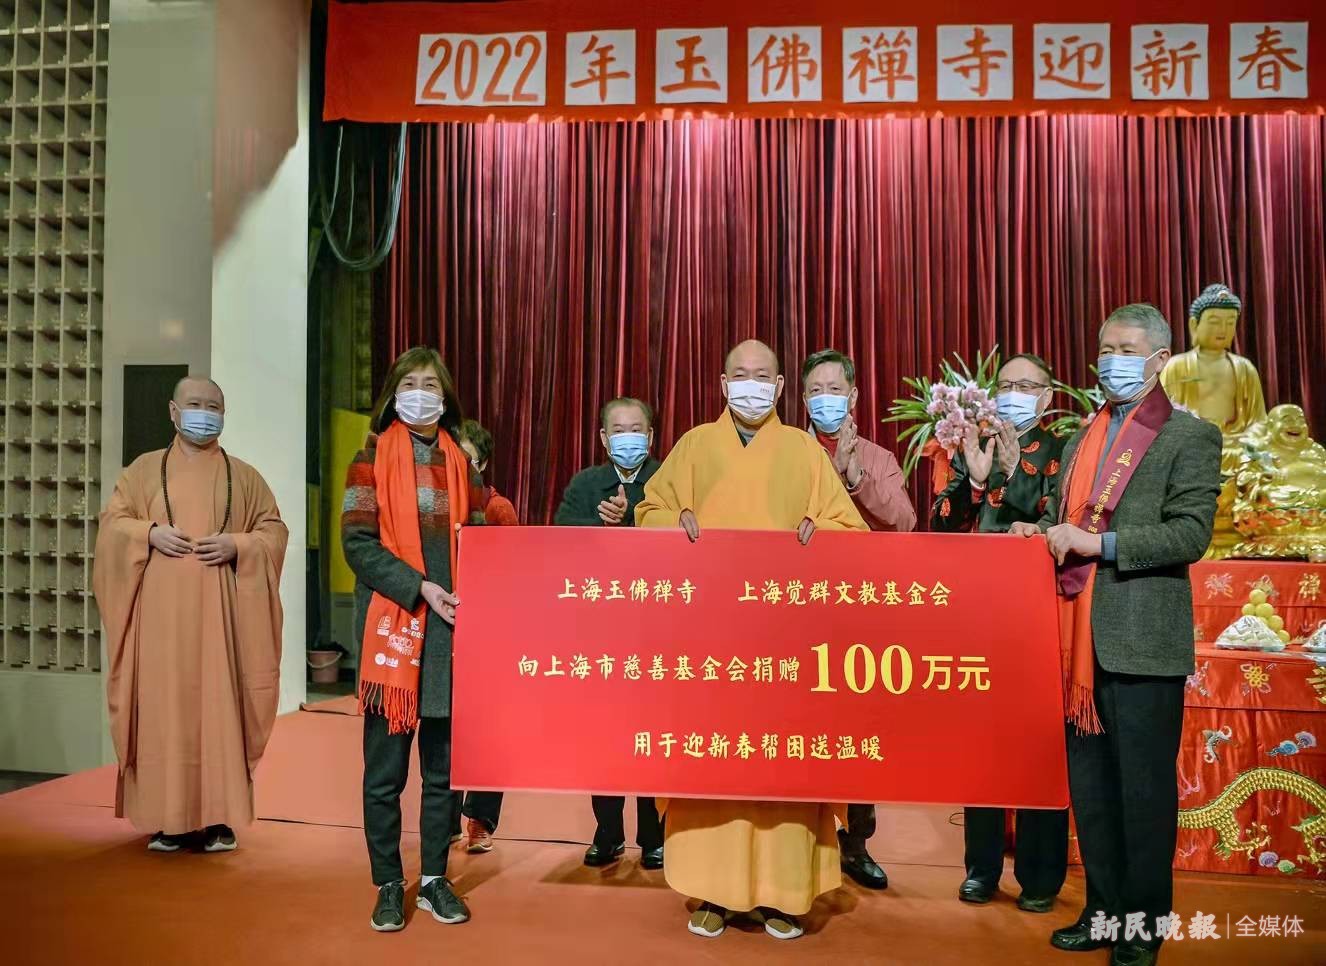 玉佛寺捐款100万元 为本市困难家庭送去新春温暖